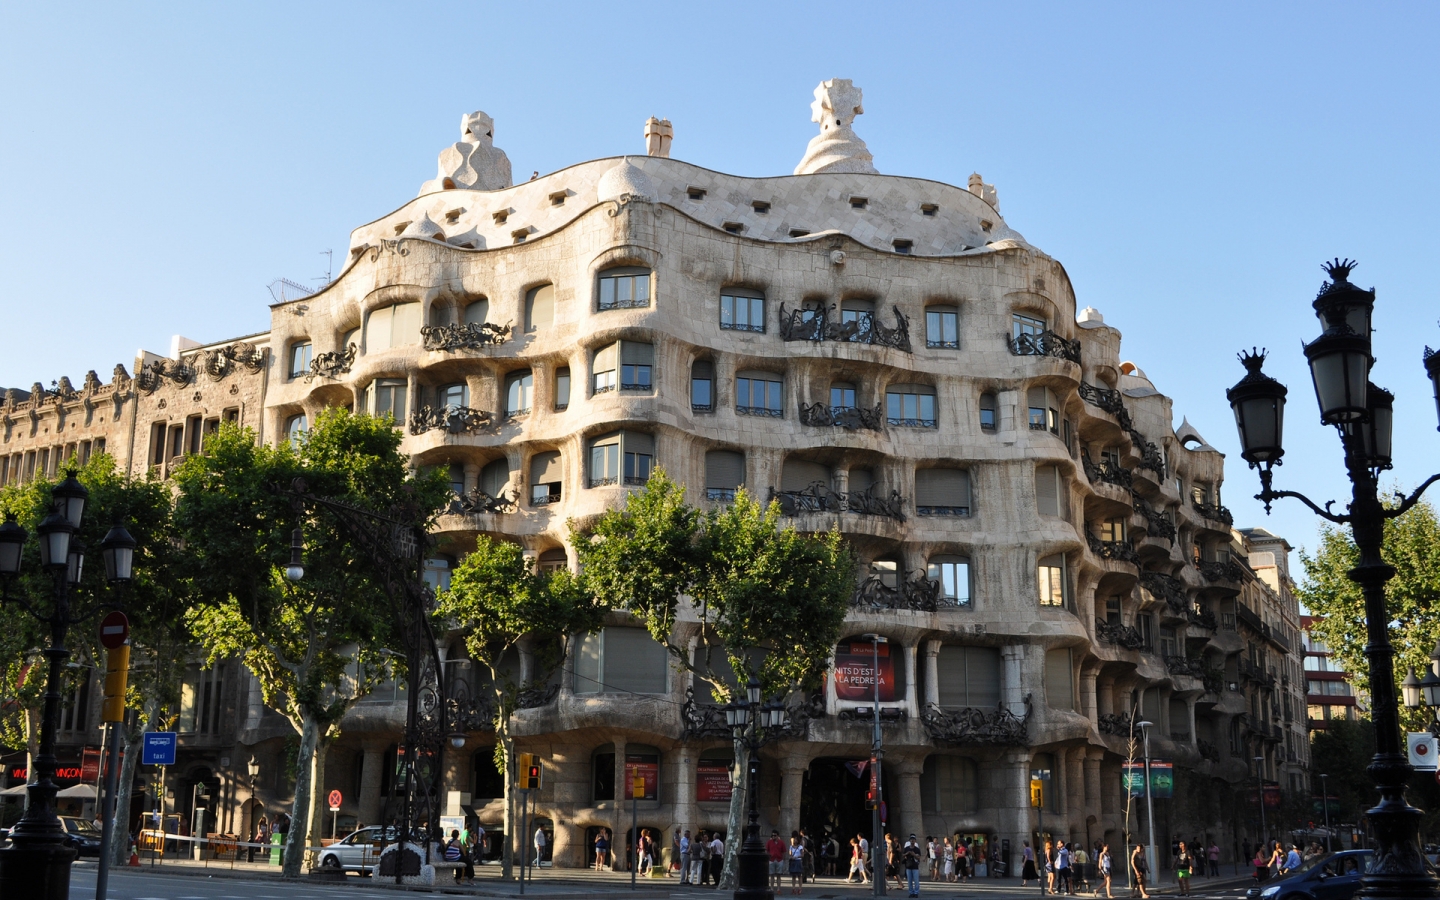 Casa Mila Barcelona for 1440 x 900 widescreen resolution